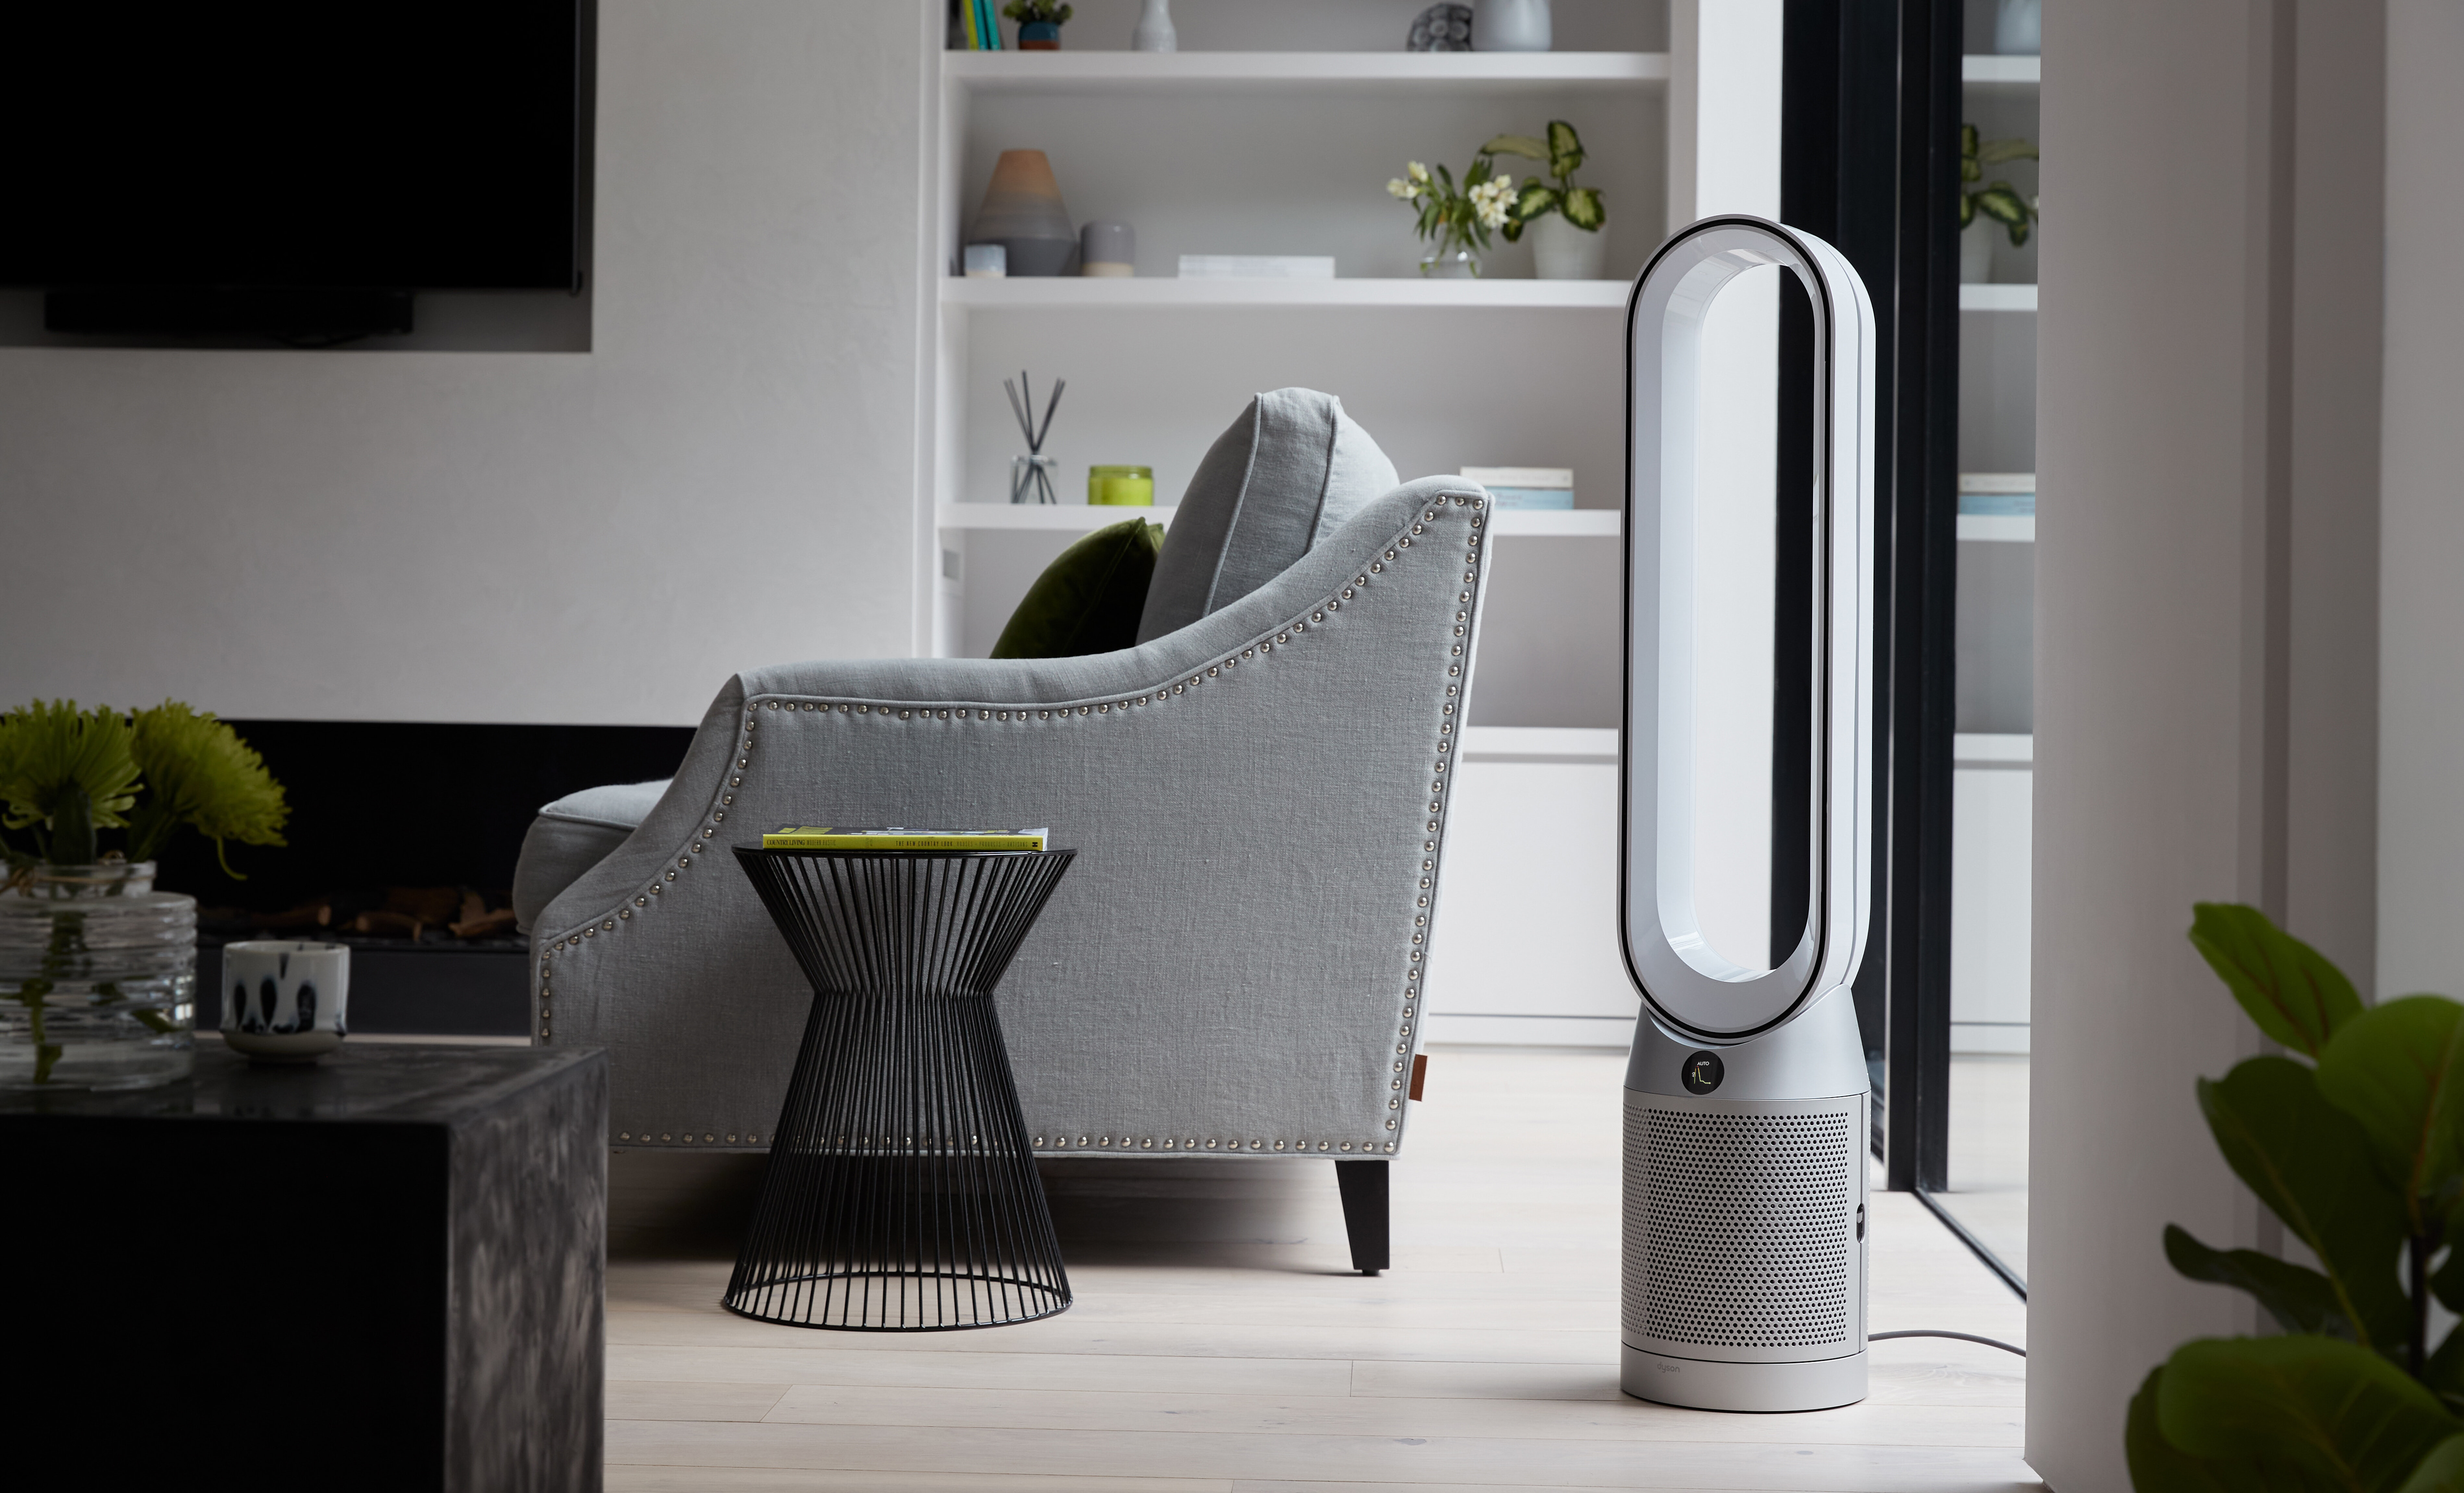 A Dyson air purifier purifies a modern living room.